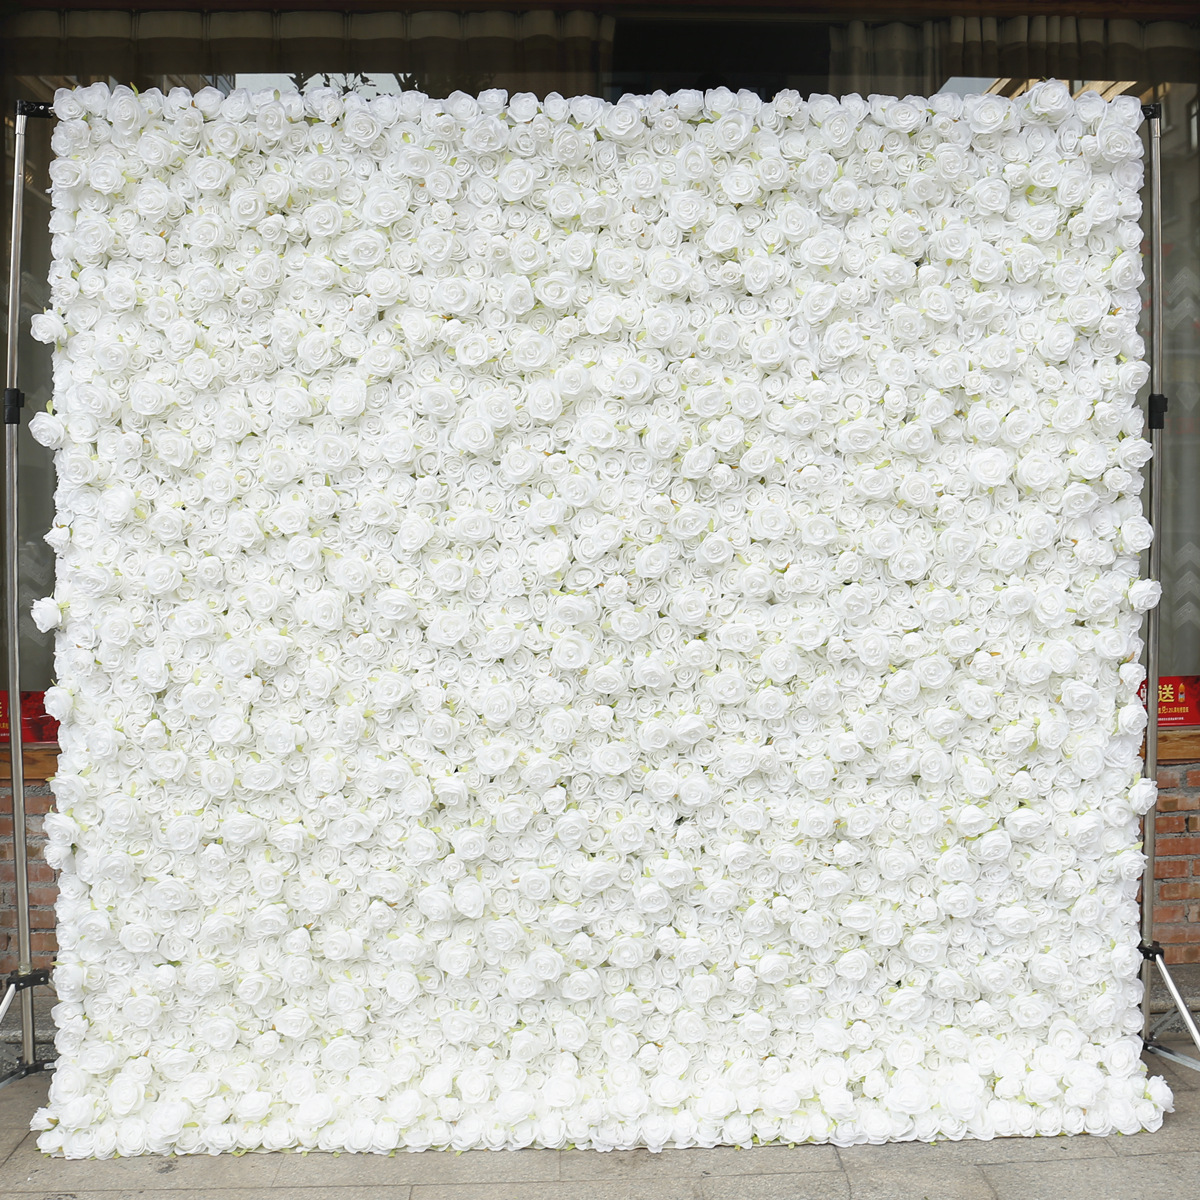 Čistá biela látka spodná ruža stena pozadie steny s vysokou hustotou 5D svadobná výzdoba svadobná výzdoba